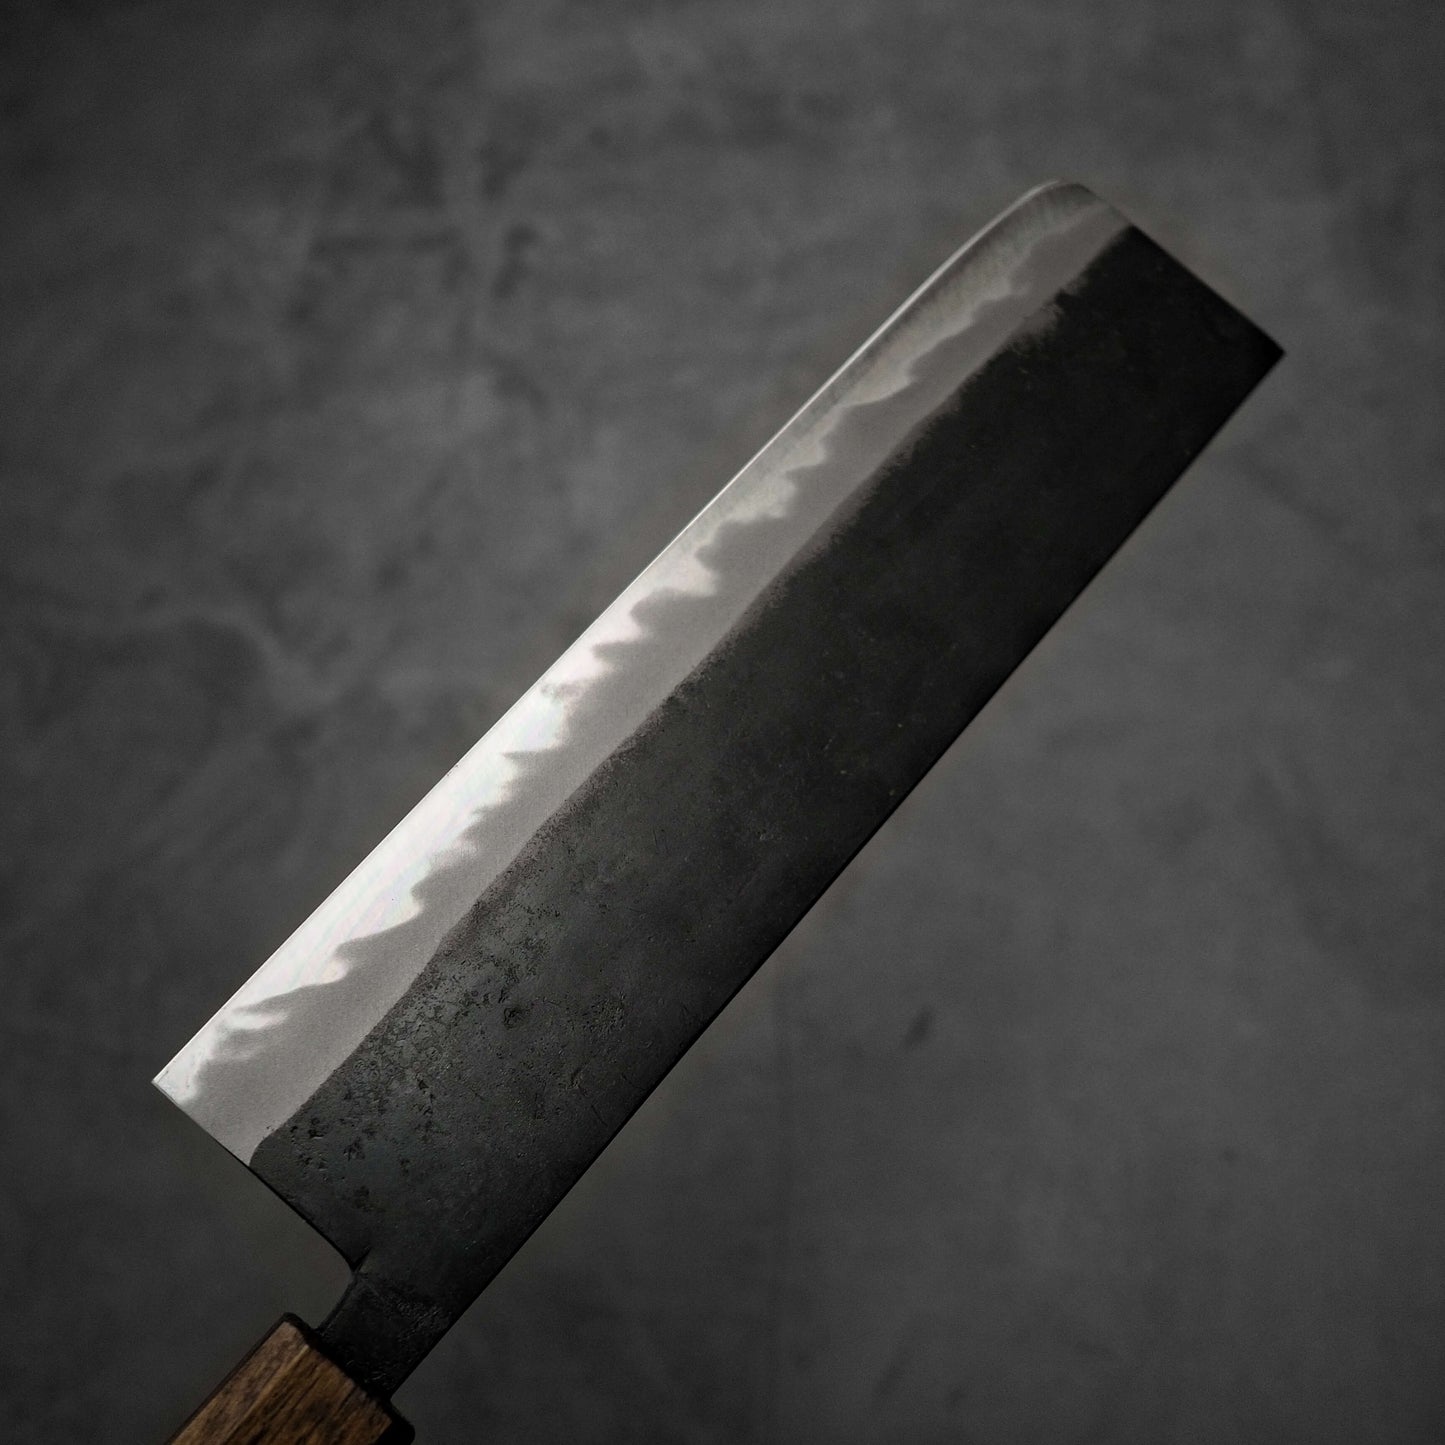 Hinokuni kurouchi shirogami#1 nakiri 210mm - Zahocho Japanese Knives